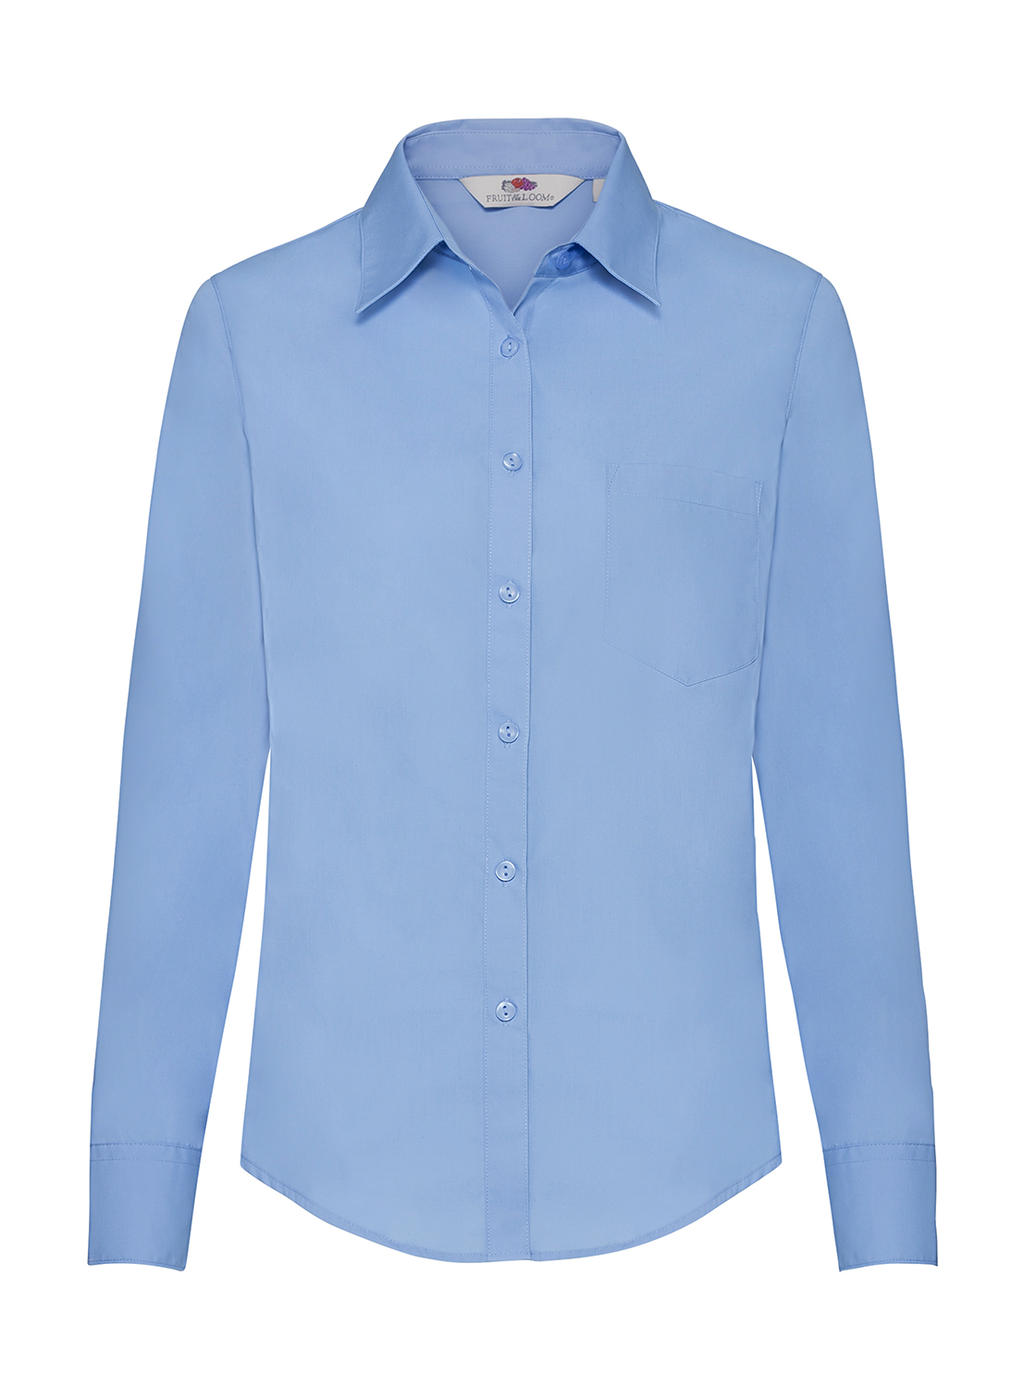  Ladies Poplin Shirt LS in Farbe Mid Blue